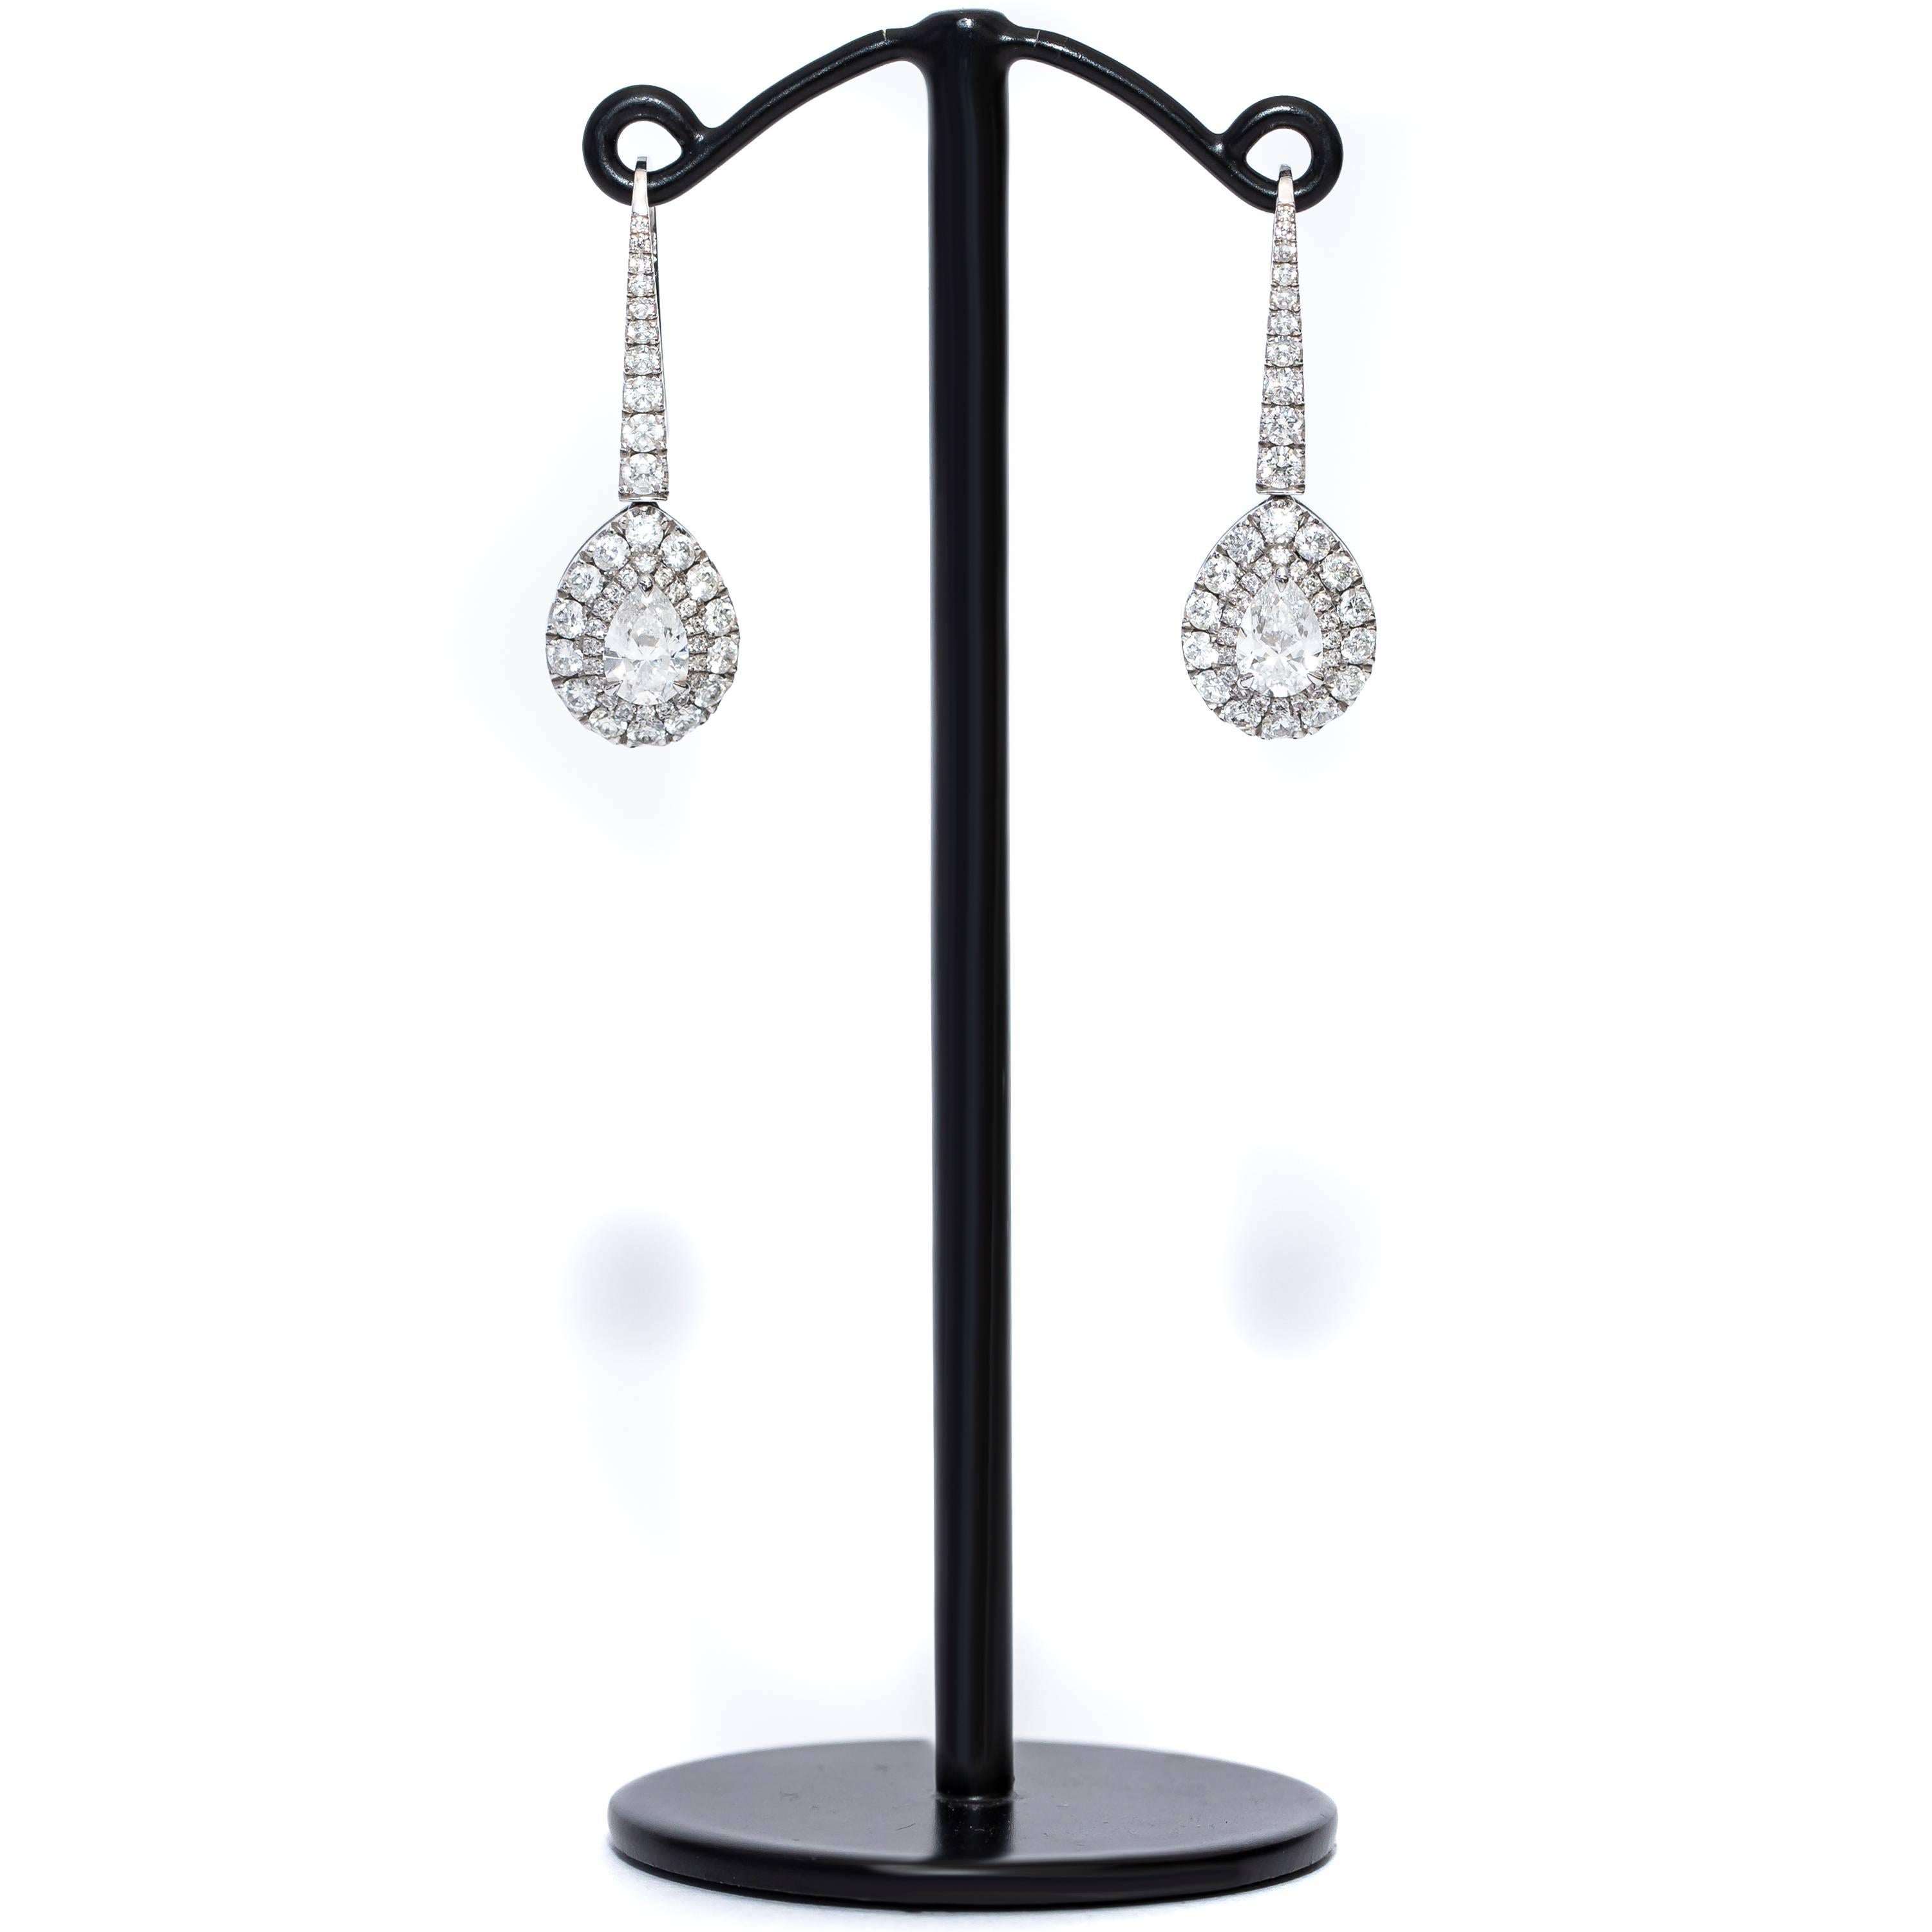 Diese schönen GIA-zertifizierten Diamanten birnenförmig Tropfen Halo Ohrringe verfügen über 2 GIA Pear Brillant Diamanten D-VS1 in der Mitte sowohl mit einem Gewicht von 0,50 Karat jeweils von 1,30 Karat Farbe H Clarity SI1 Round Brillant Diamanten